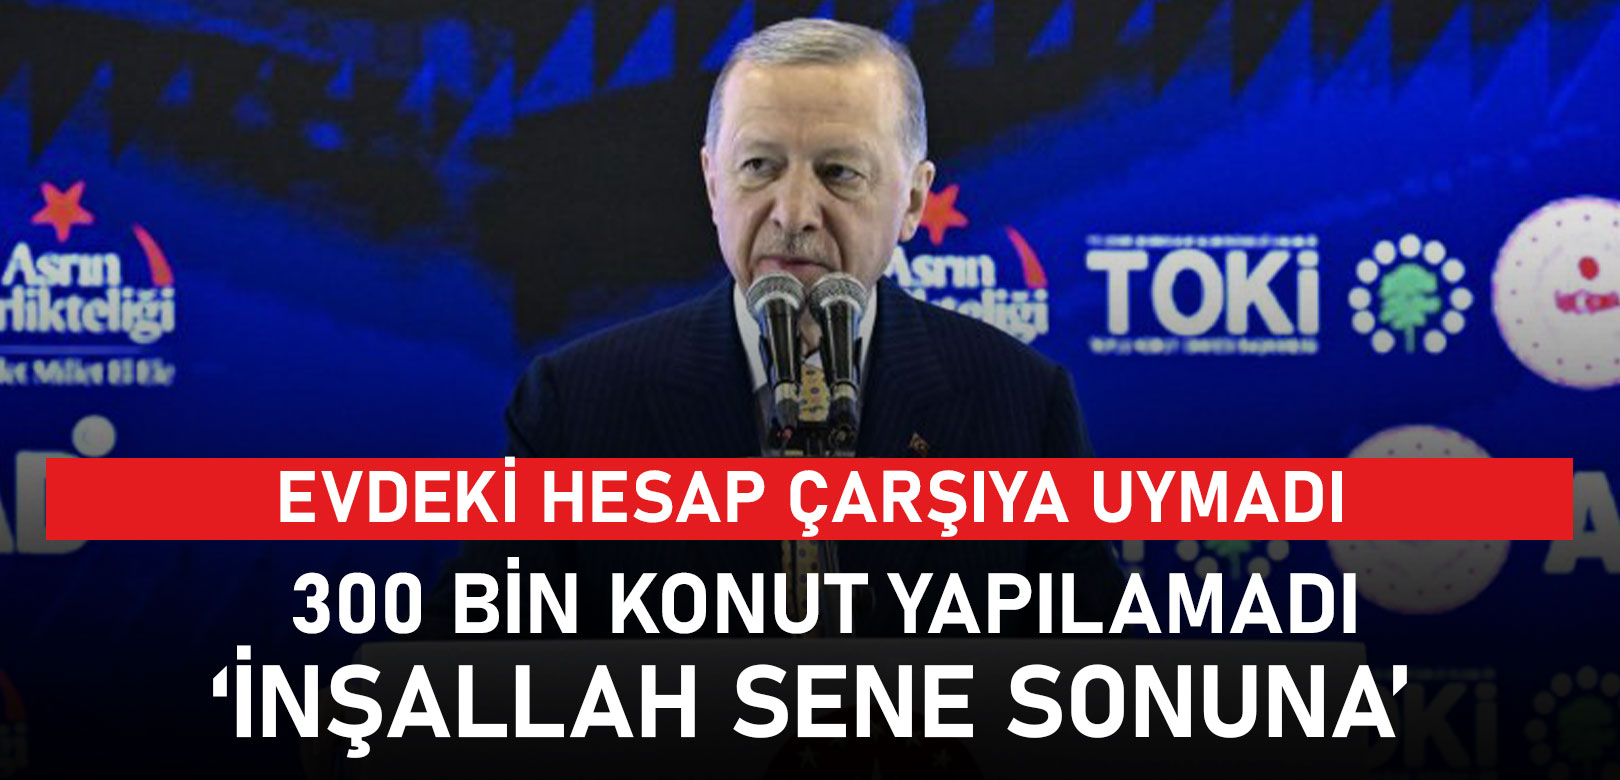 Evdeki hesap çarşıya uymadı: Erdoğan’ın 319 bin ev sözü yerine gelmedi, Bakan Özhaseki ‘inşallah 2 aya’ dedi